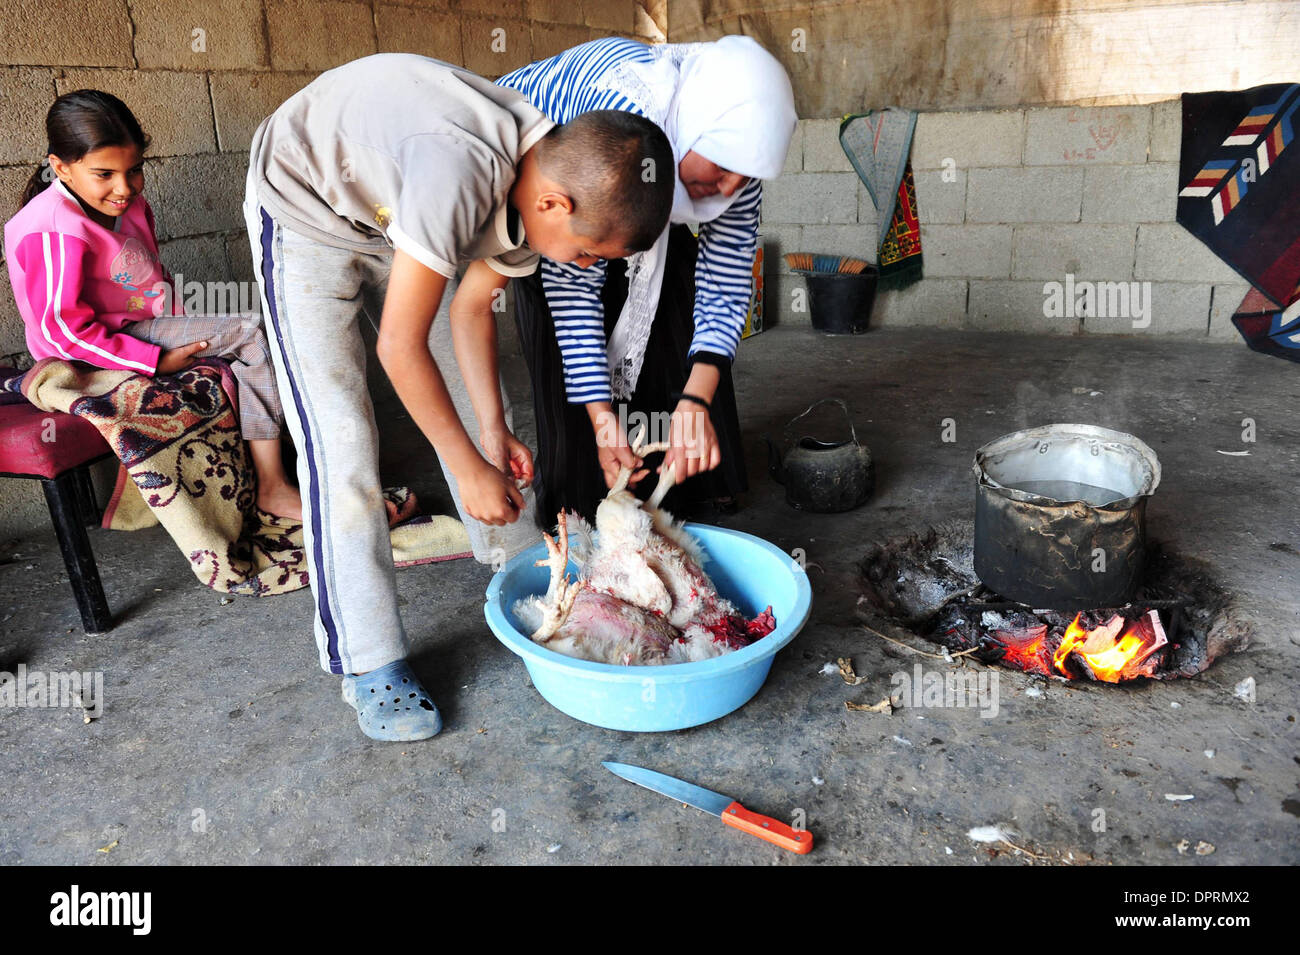 Nov 25, 2008 - Rahat, Israël - Les poulets sont pris pour le plaisir et le dîner. En Israël, des dizaines de milliers de Bédouins arabes craignent que le gouvernement israélien veut s'approprier des terres qu'ils disent leur appartient et de mettre fin à leur mode de vie nomade traditionnel. Les Bédouins arabes israéliens sont 160 000 citoyens israéliens, qui vivent dans ce qu'on appelle des "villages non reconnus" qui n'apparaissent pas sur n'importe quel Banque D'Images